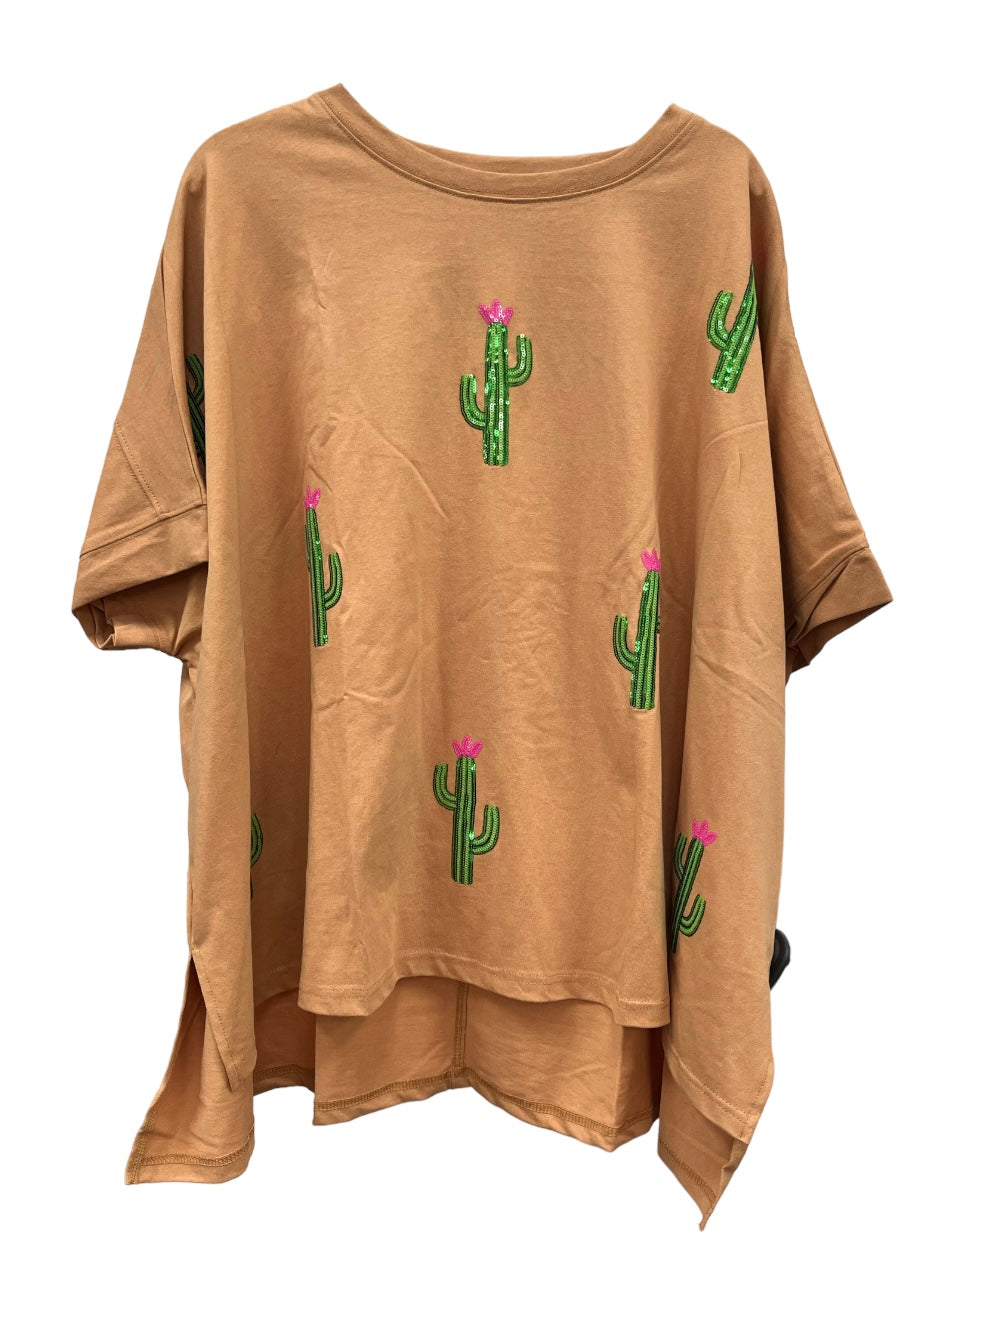 Cactus shirt